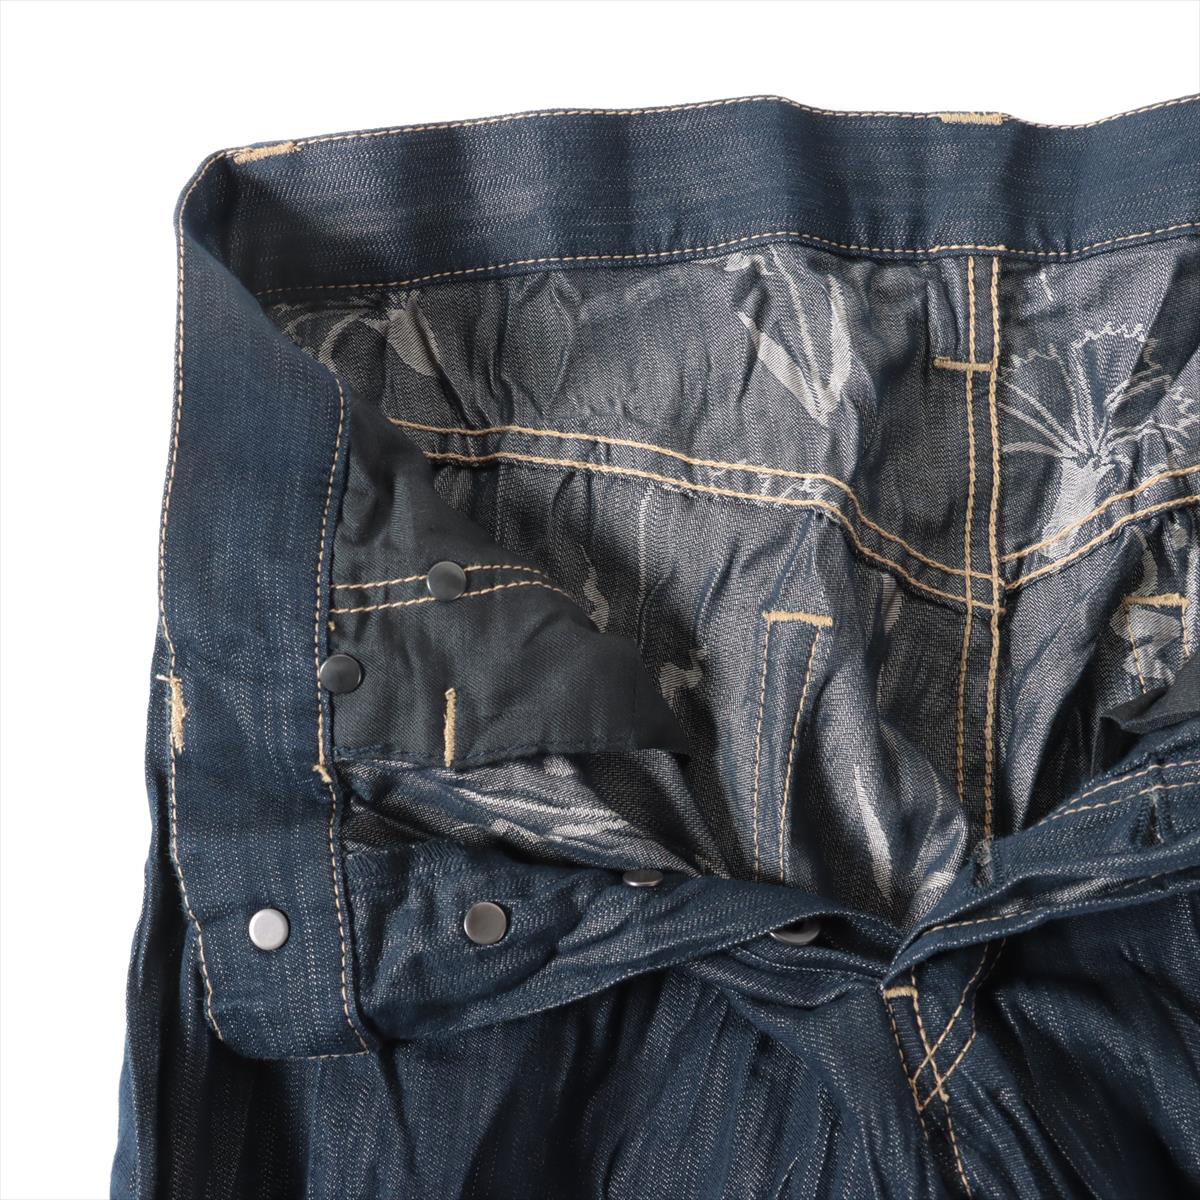 ISSEY MIYAKE Cotton & polyester Denim pants 29 Men's Blue indigo  ME01FF046 Wrinkle processing